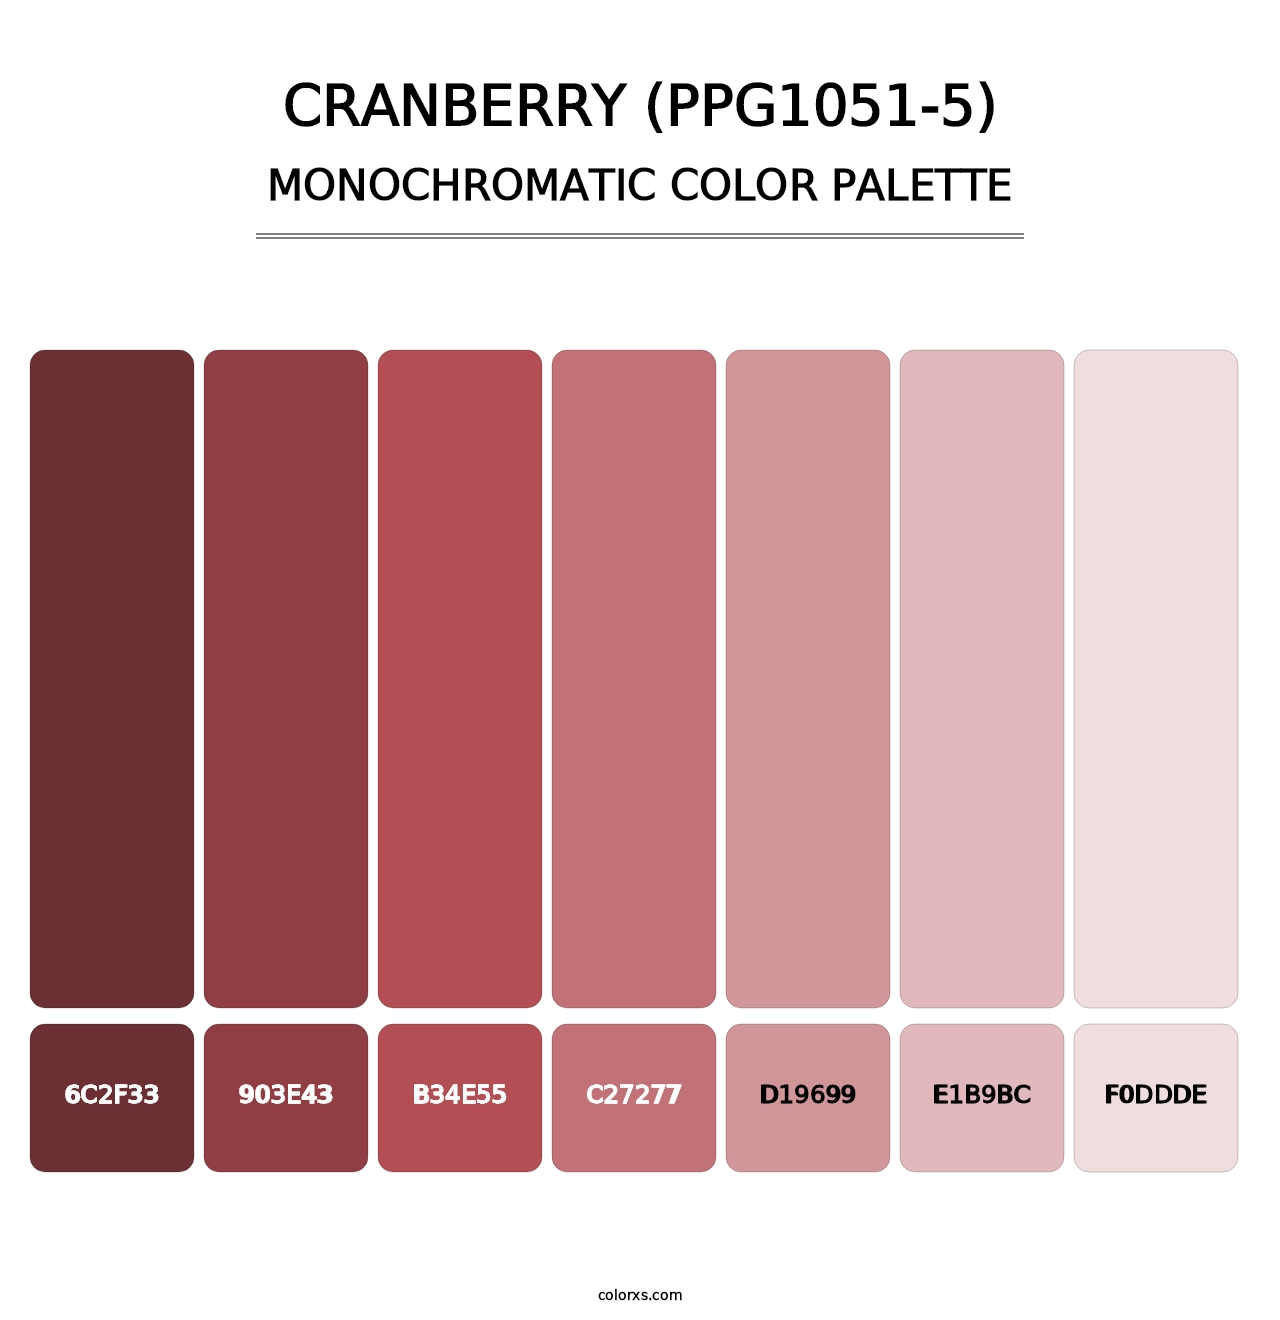 Cranberry (PPG1051-5) - Monochromatic Color Palette